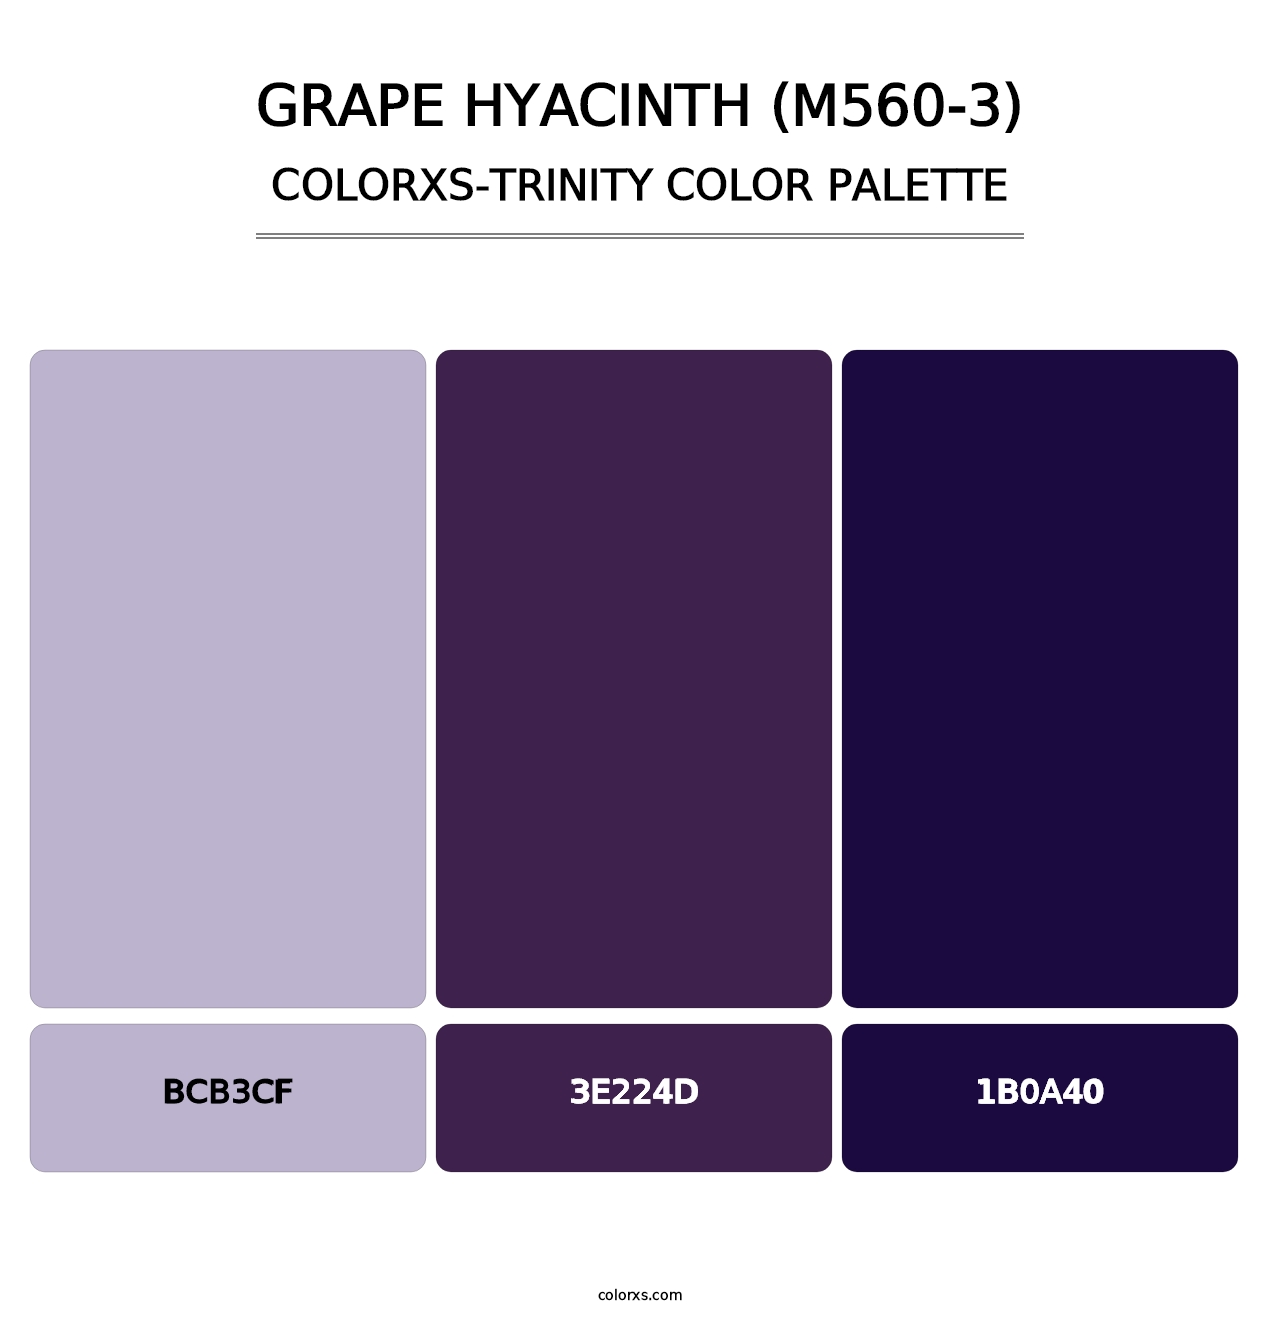 Grape Hyacinth (M560-3) - Colorxs Trinity Palette